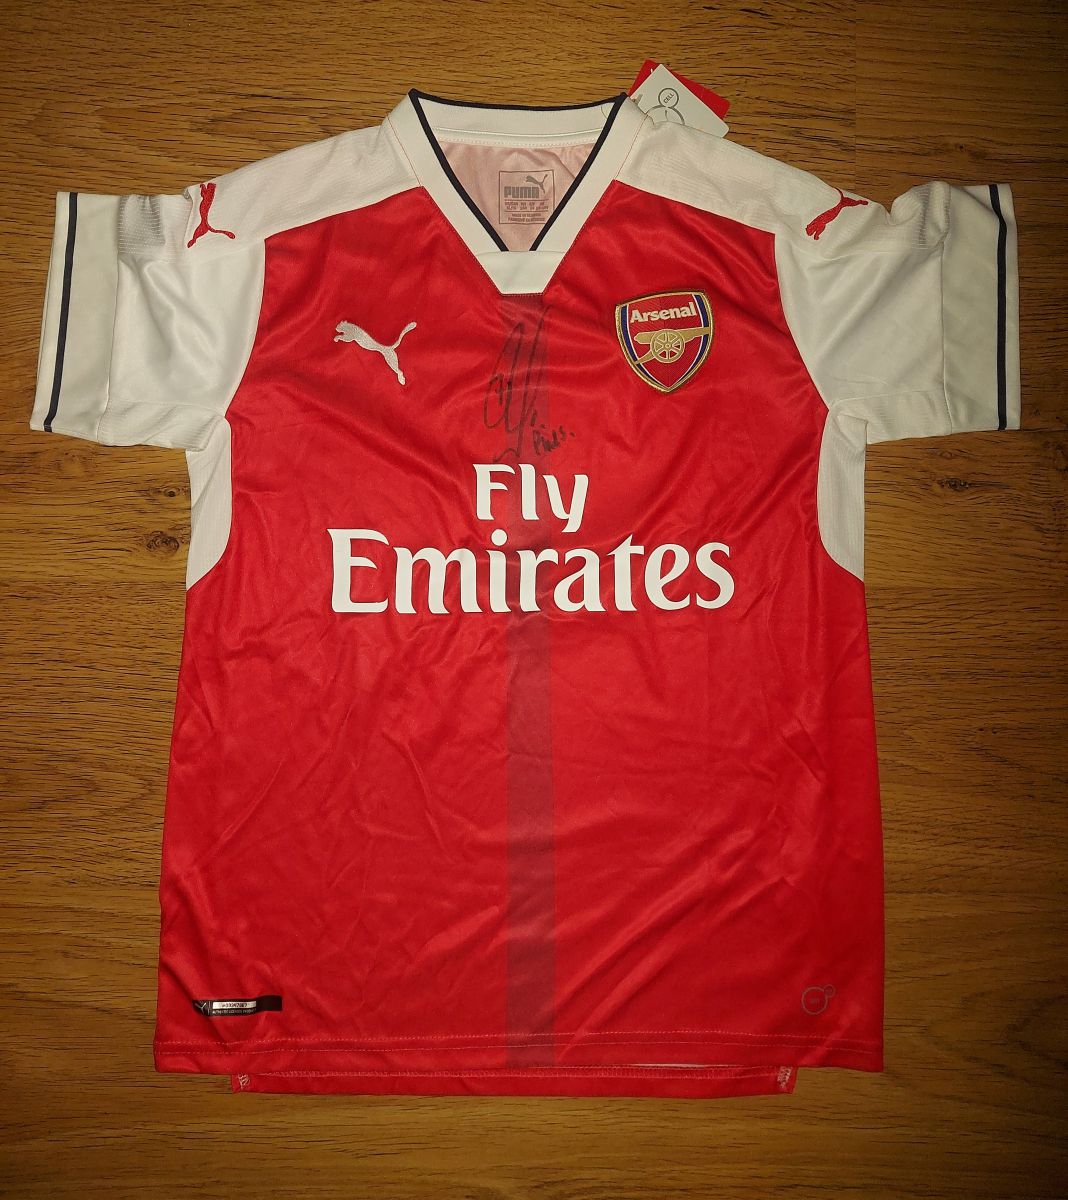 Nový dres Arsenalu FC s podpisem Pirese fotka